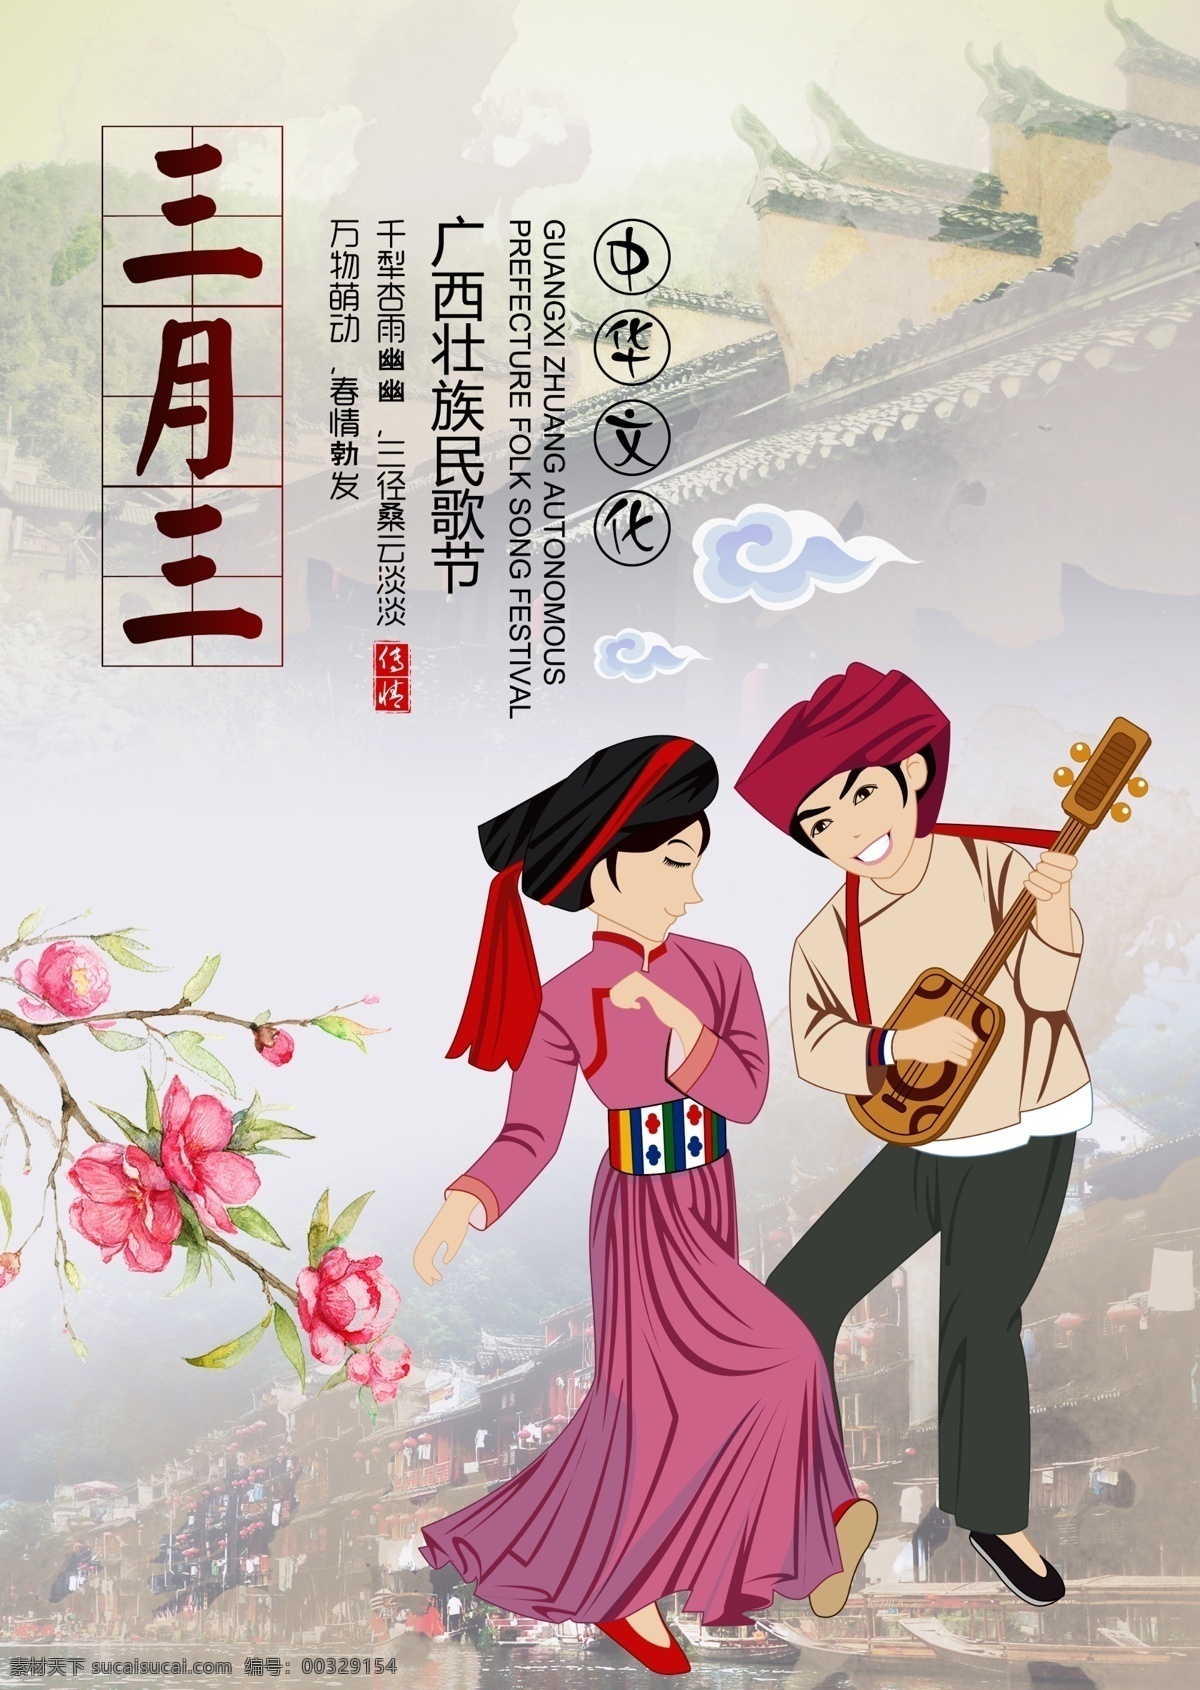 三月 三上 巳 节 传统文化 节日 海报 三月三上巳节 广西 壮族 传统节日 中国传统节日 民歌节